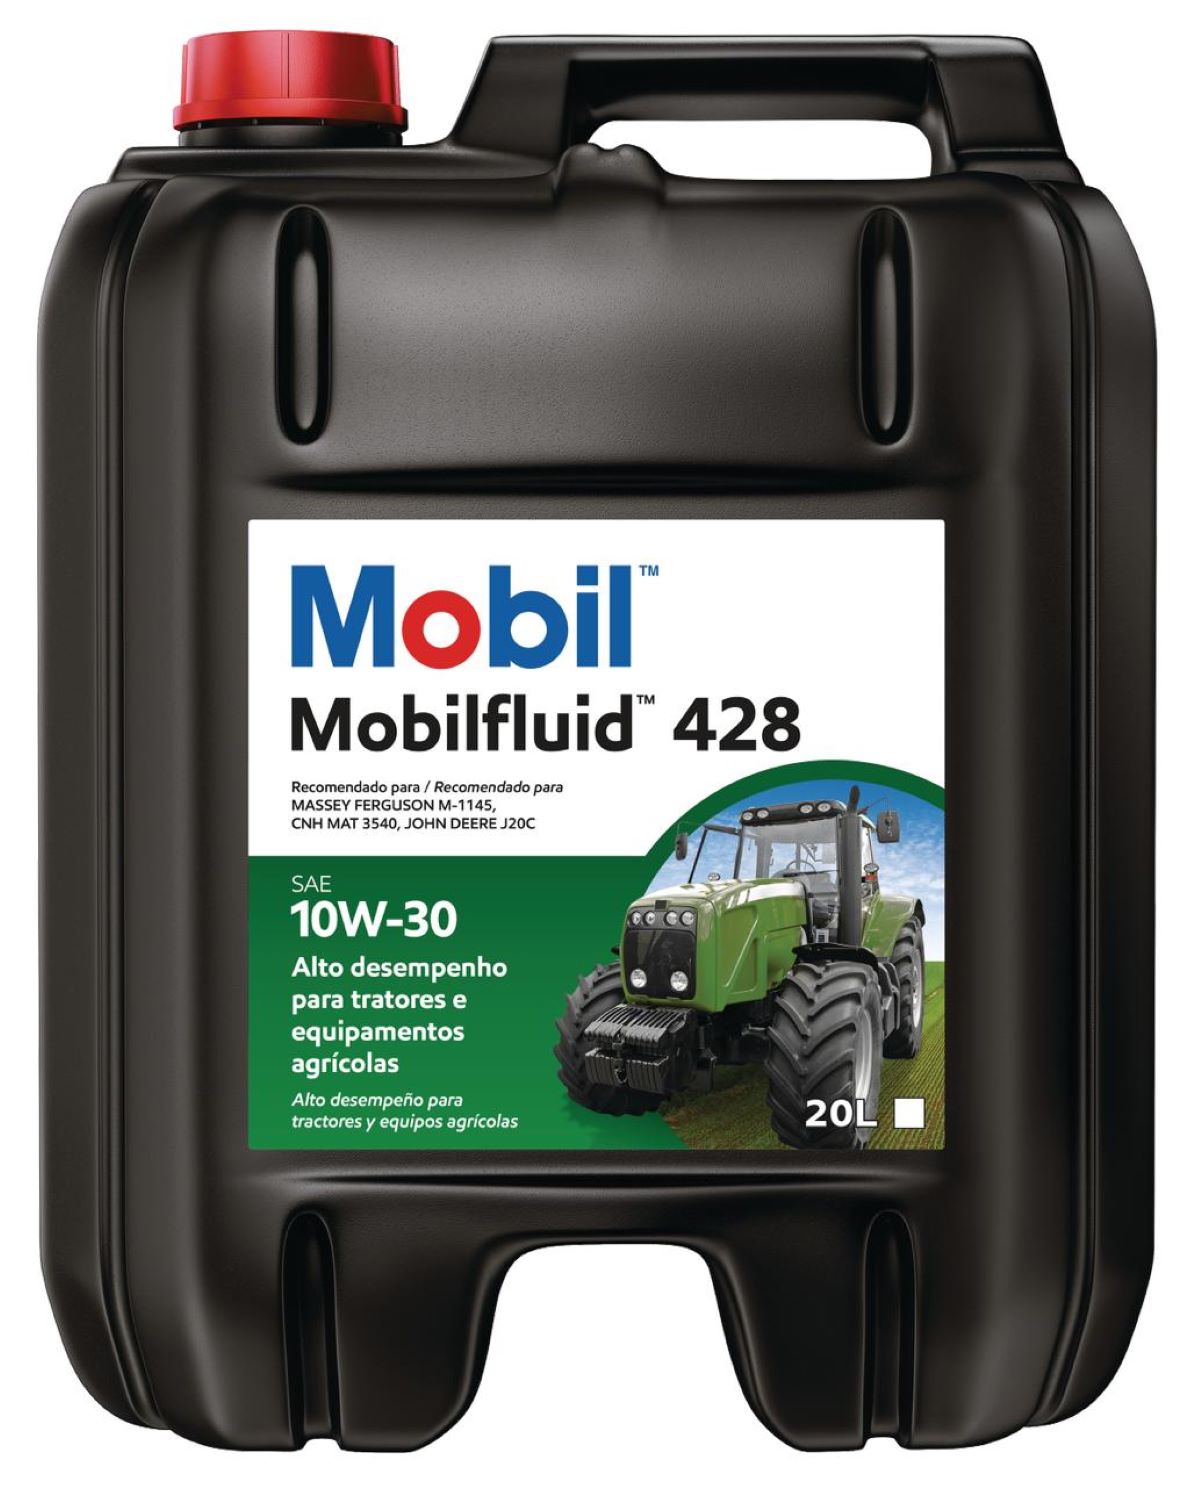 Moove é pioneira no setor utilizando embalagens mais sustentáveis para comercialização de lubrificantes